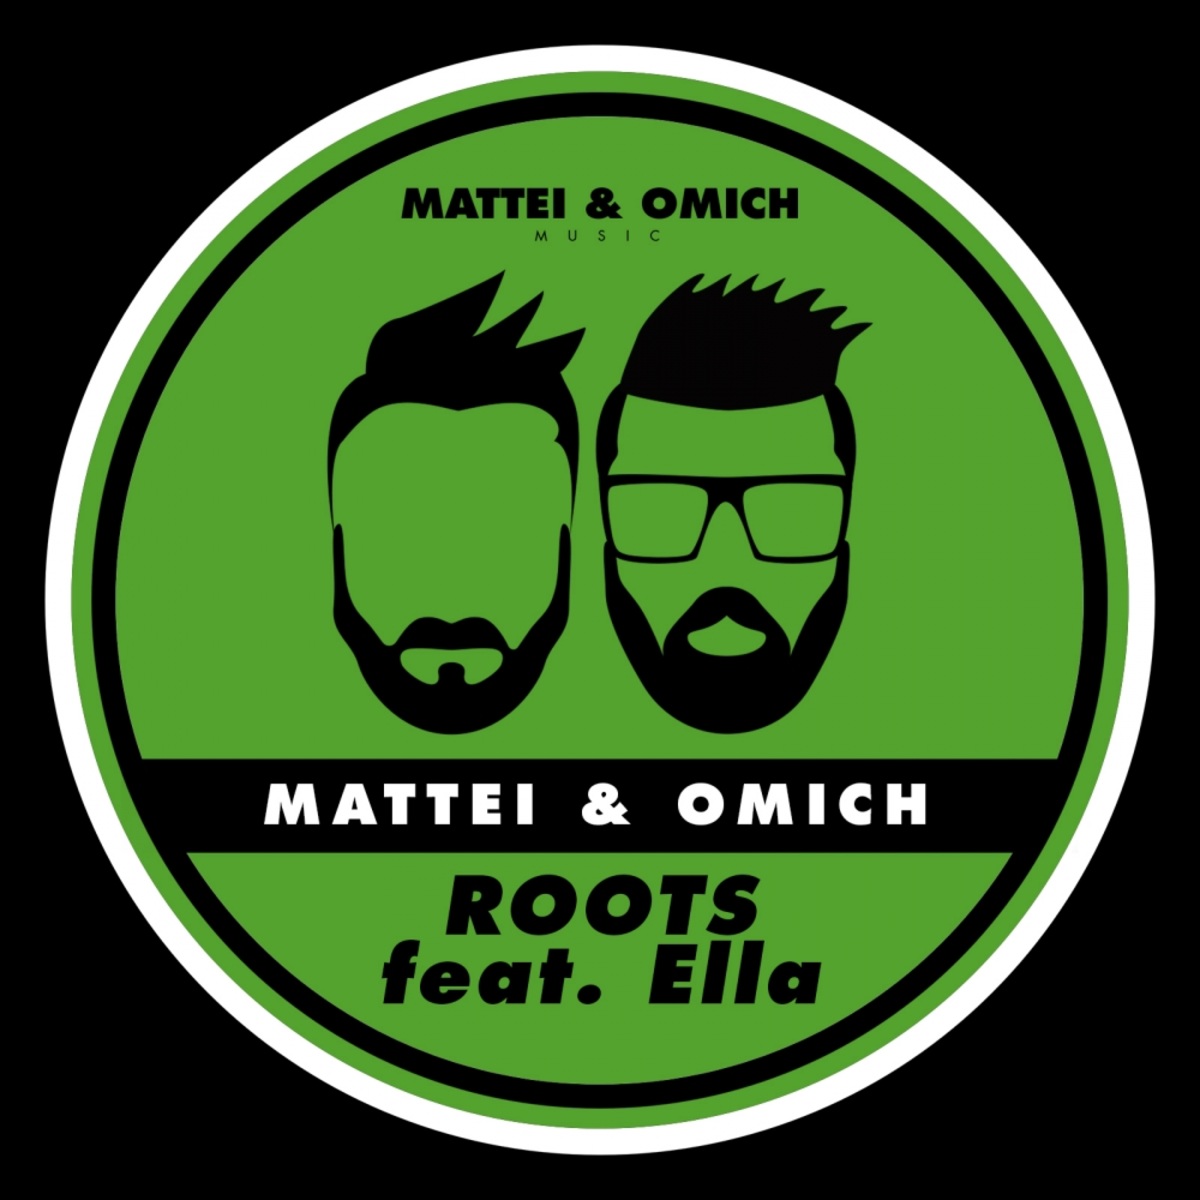 Mattei & Omich ft Ella - Roots / Mattei & Omich Music